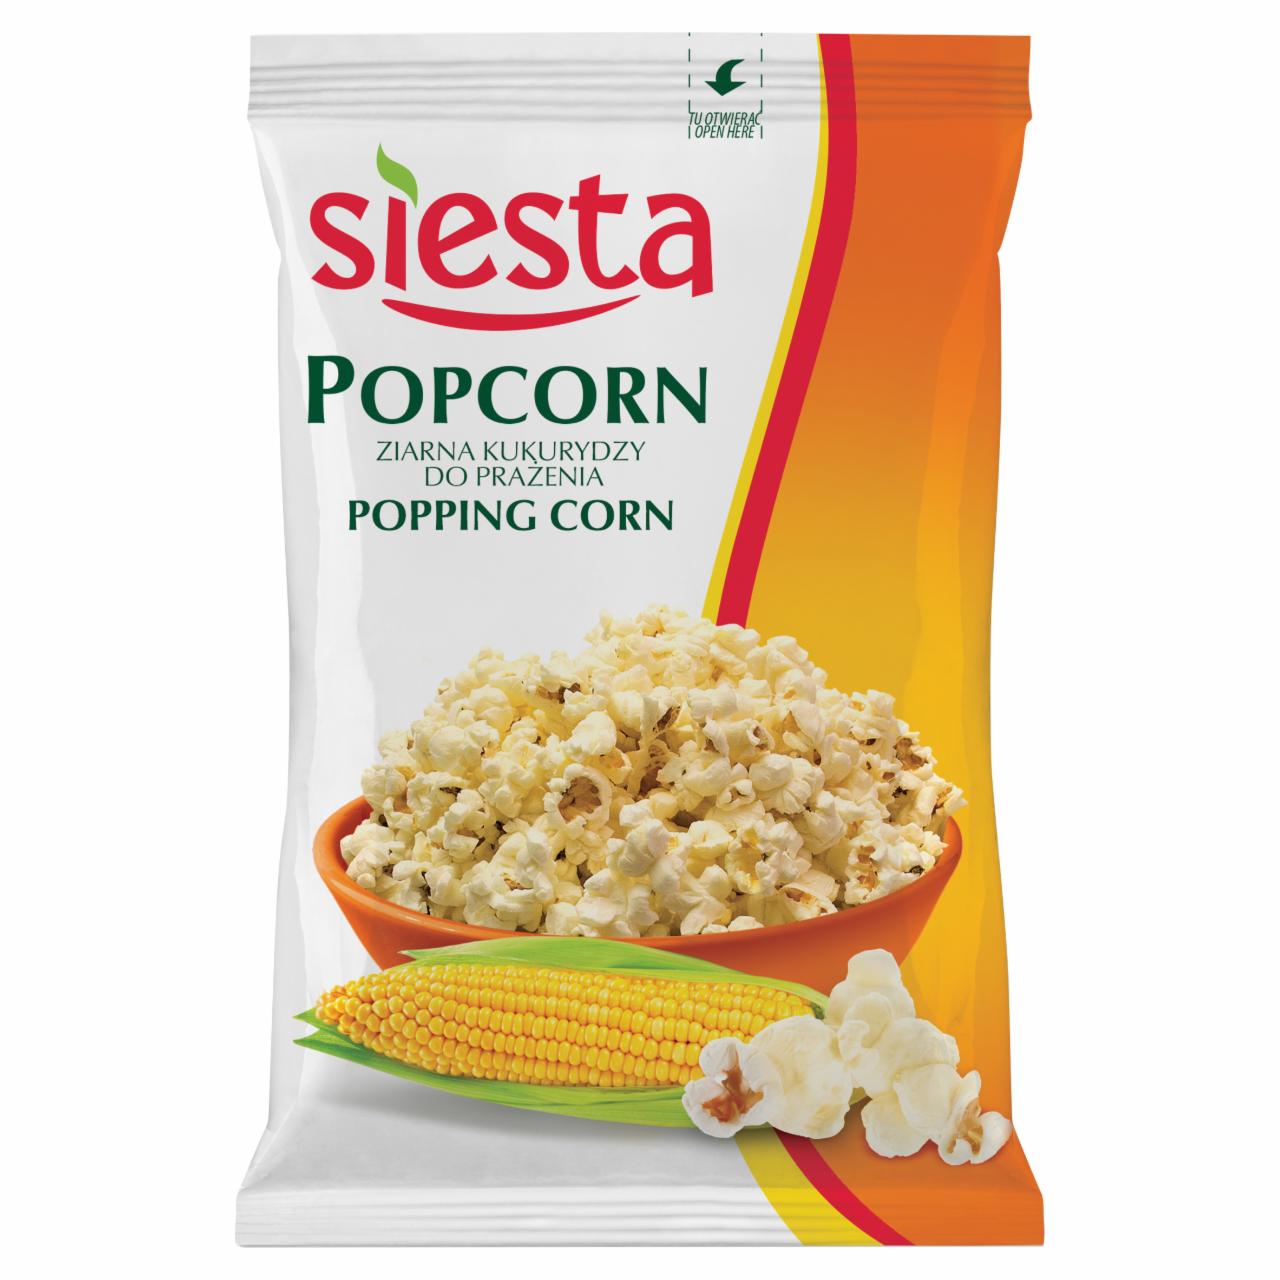 Zdjęcia - Siesta Popcorn ziarno kukurydzy do prażenia 150 g